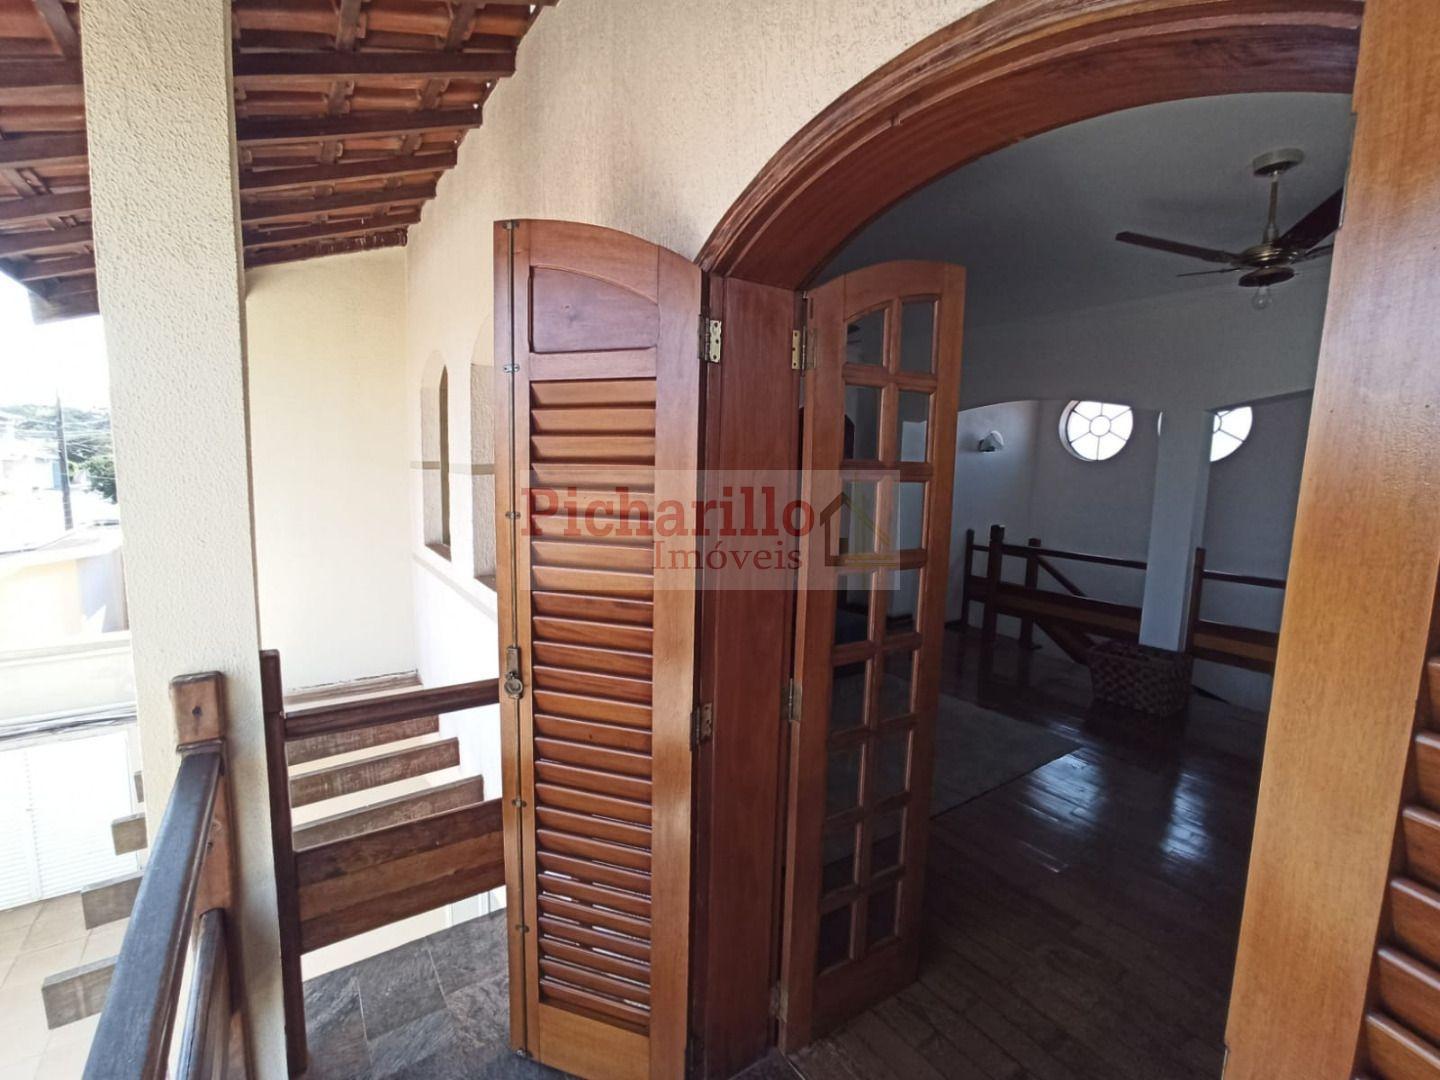 Sobrado com 5 dormitórios (2 suítes) à venda, 452 m² - Planalto Paraíso - São Carlos/SP